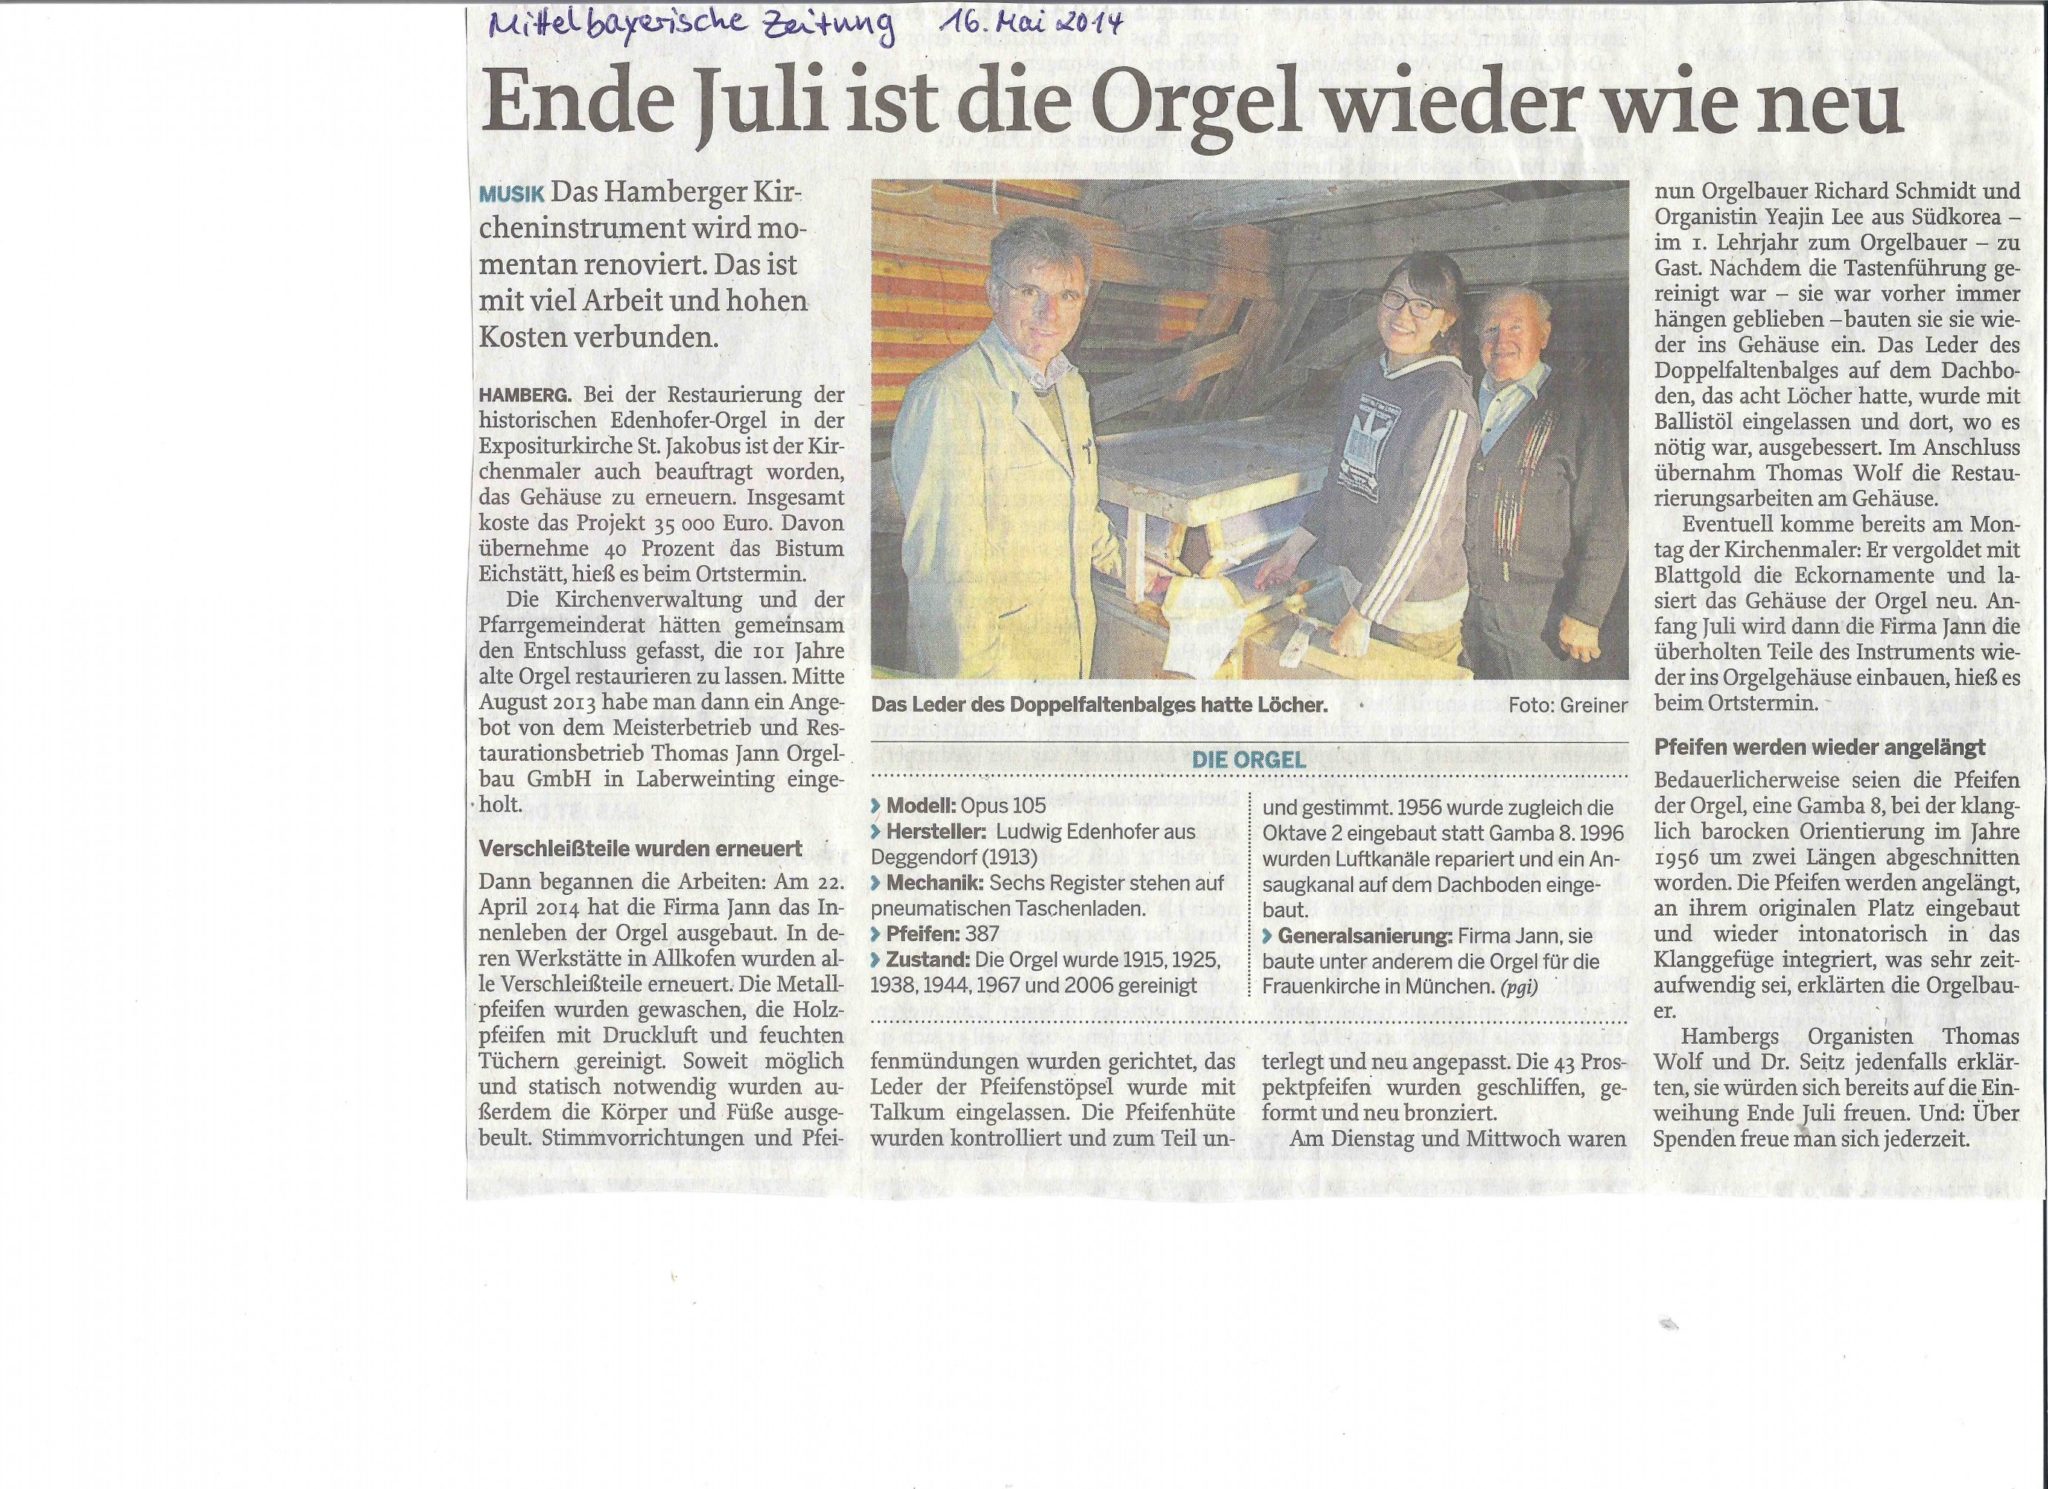 Orgel-Zeitung-3-001-e1407427896694.jpg